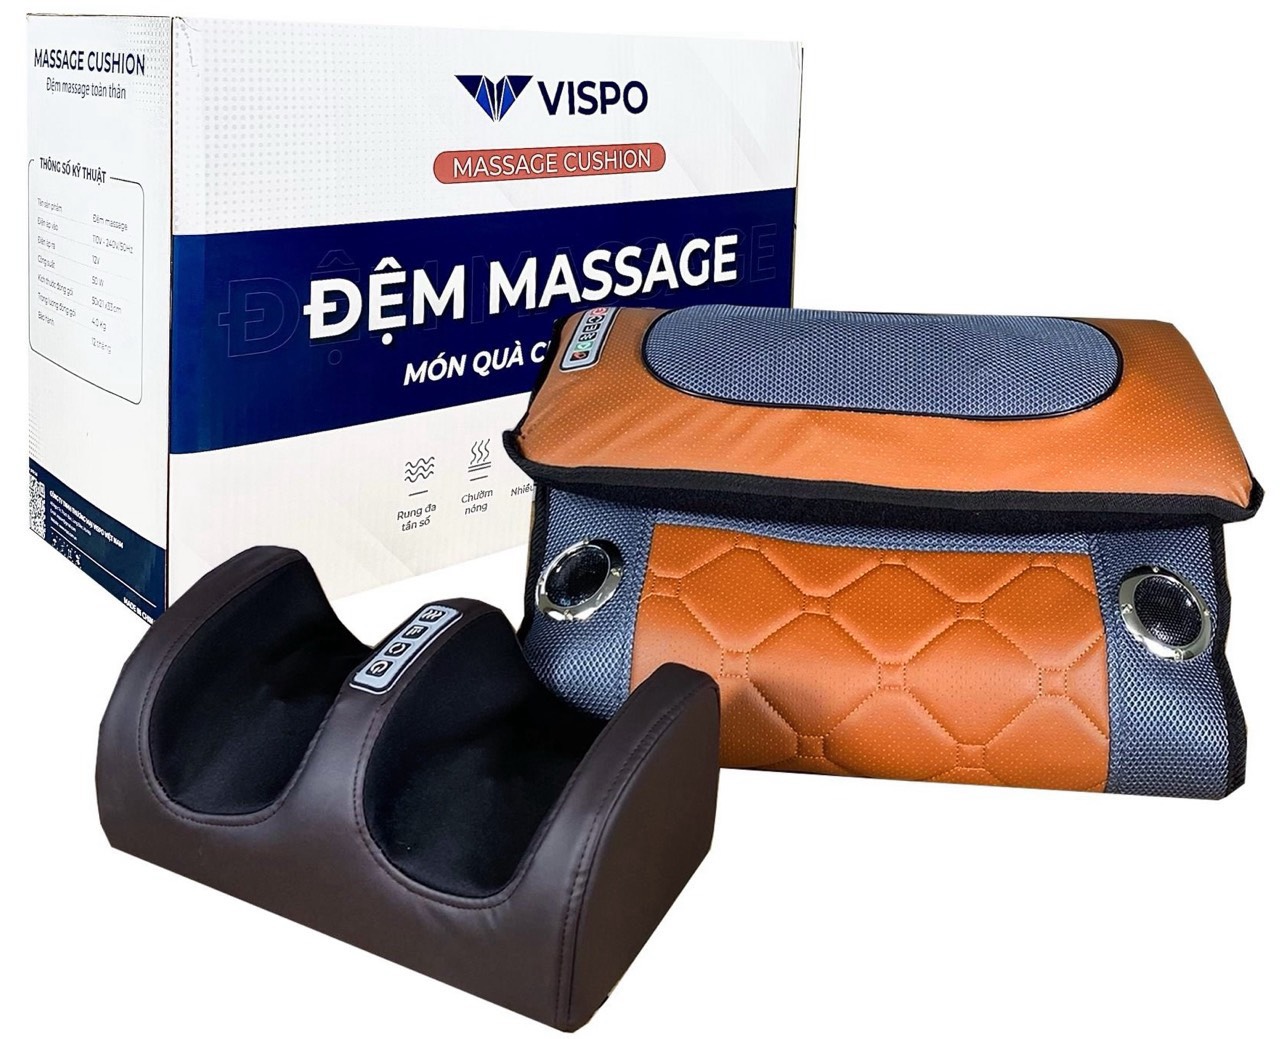 Đệm Massage Toàn Thân VISPO VP-N23D - Máy Massage Cổ Vai Gáy, Lưng, Chân Đa Năng Kết Hợp Nhiệt Hồng Ngoại Giúp Thư giãn, Giảm Căng Thẳng